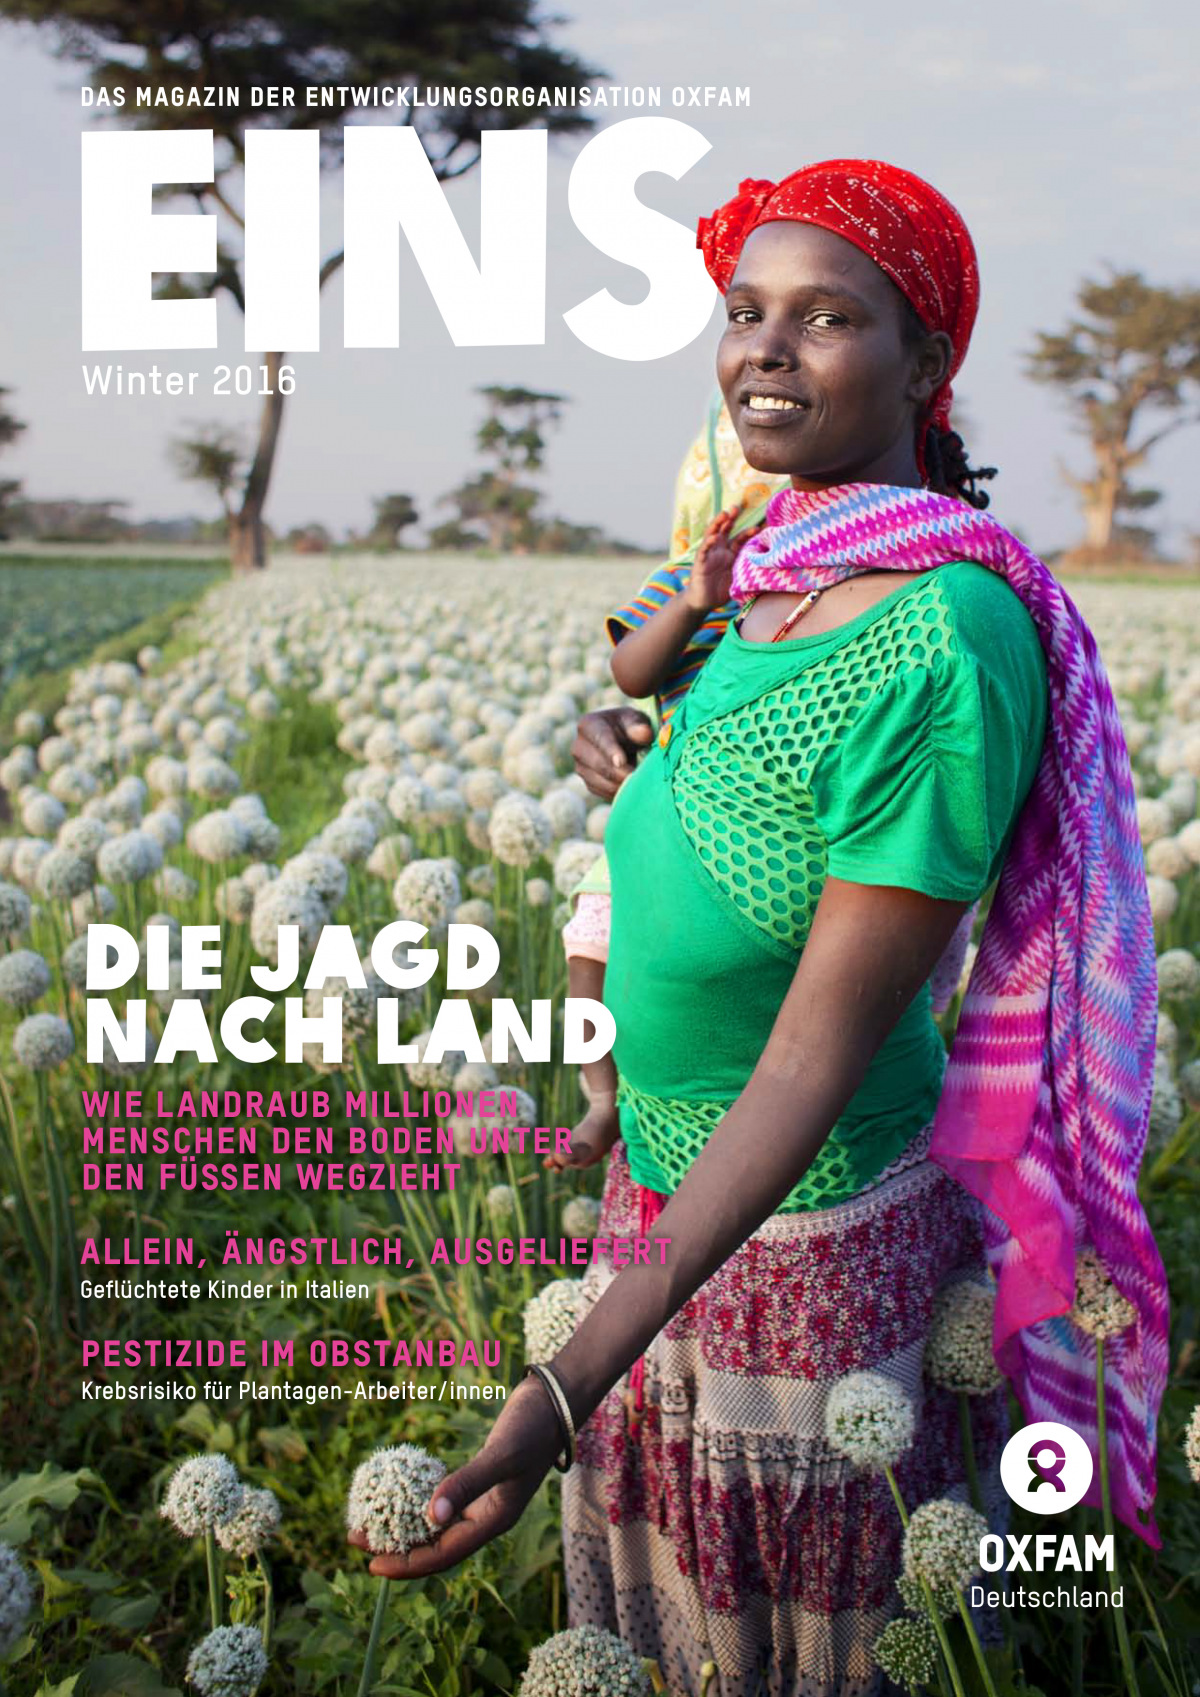 Titelbild vom Oxfam-Magazin EINS (Winter 2016)